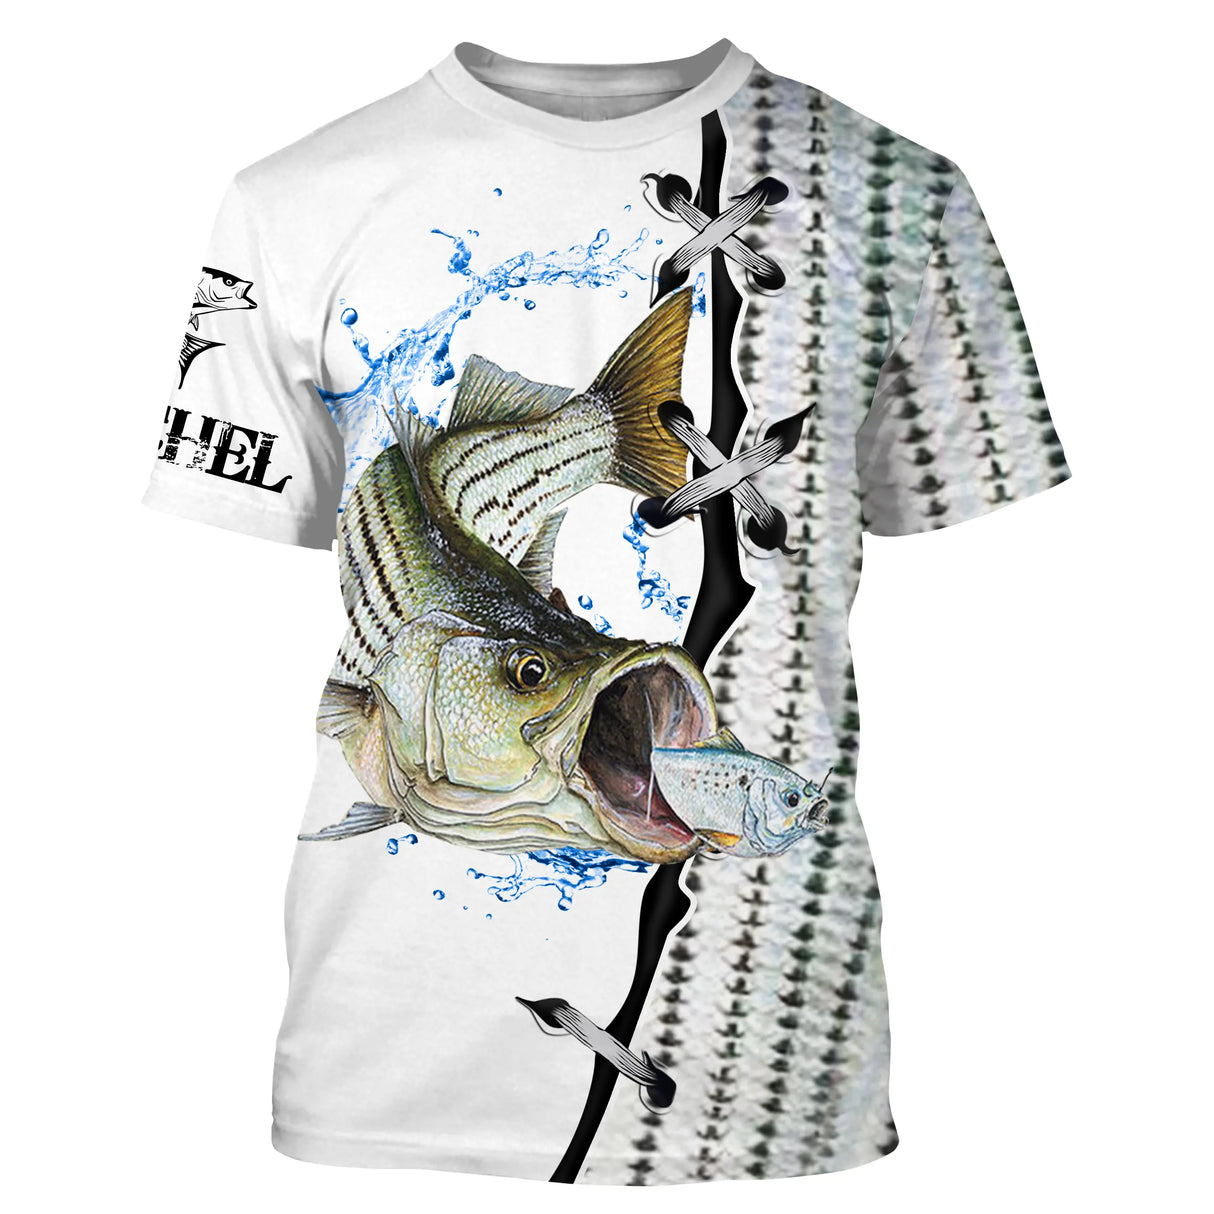 Camiseta personalizada de piel de bajo, regalo original de pescador - CT29072205